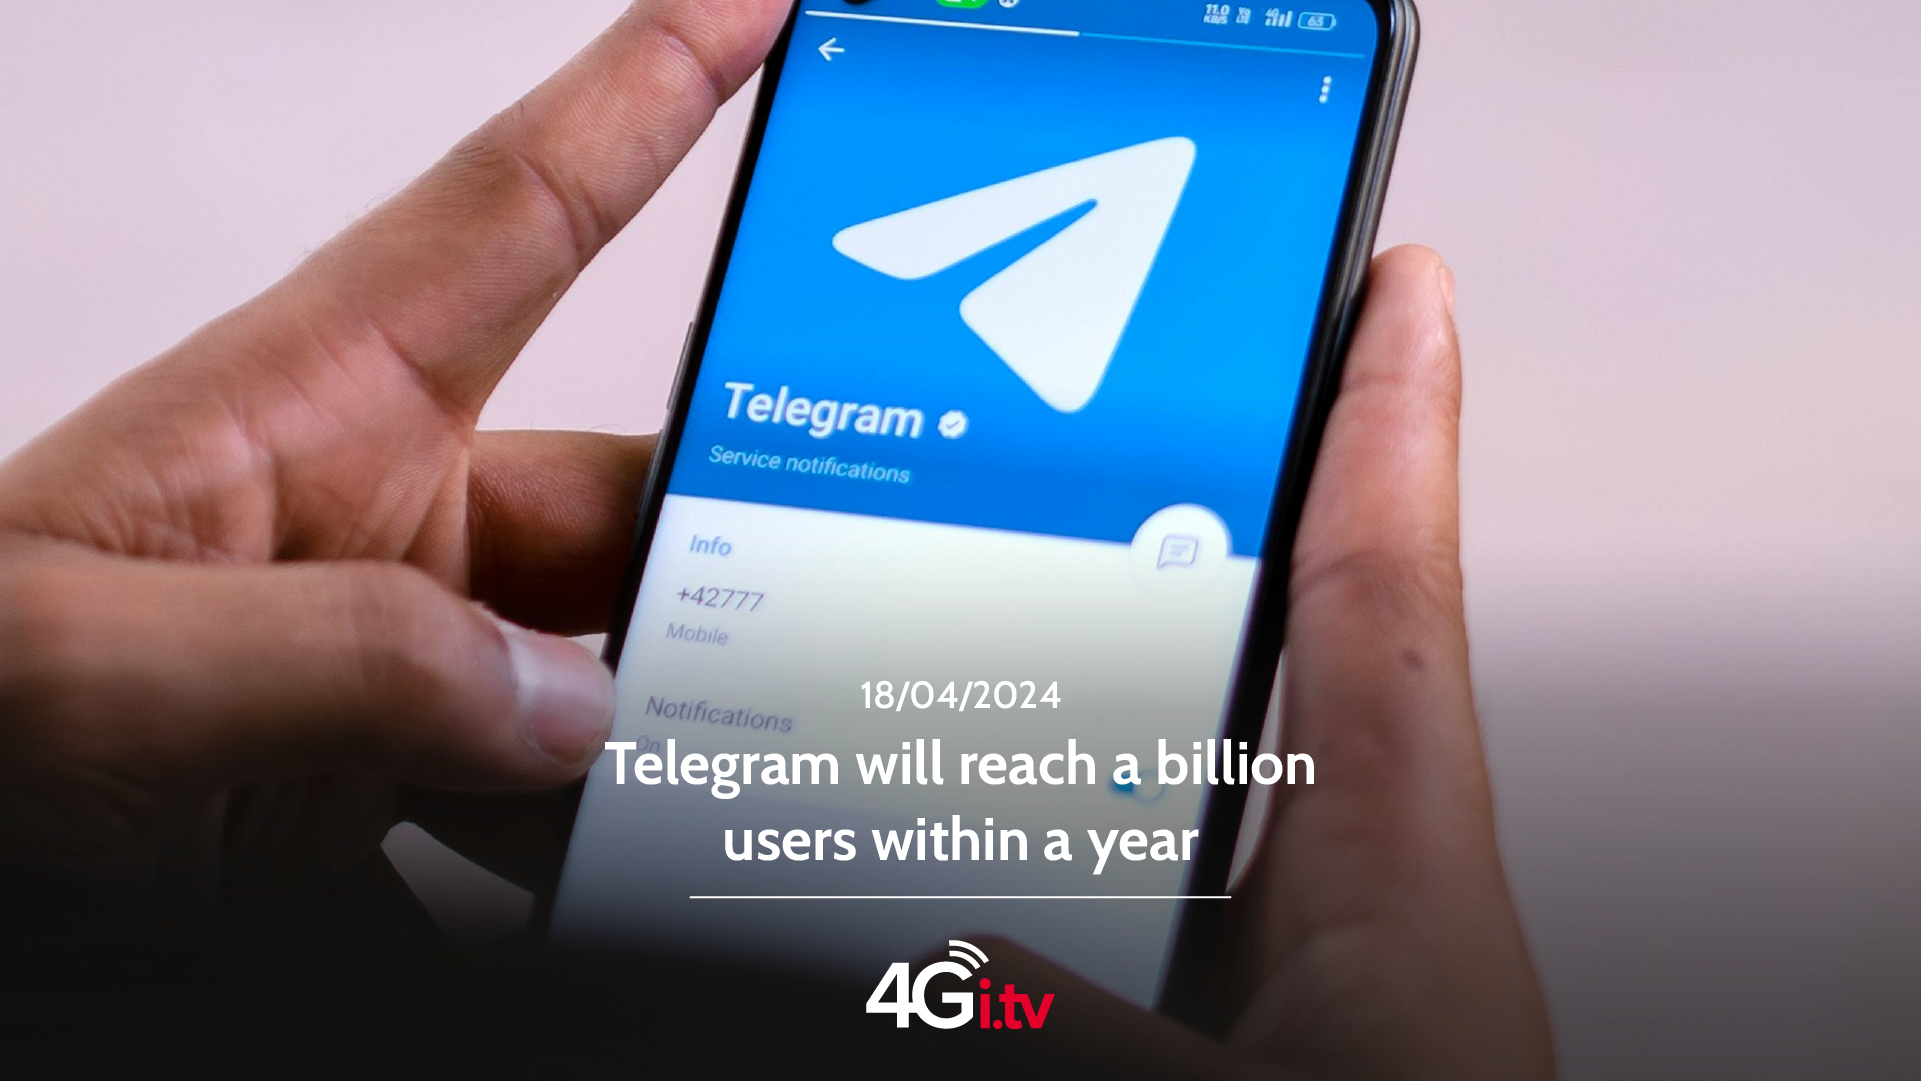 Lesen Sie mehr über den Artikel Telegram will reach a billion users within a year